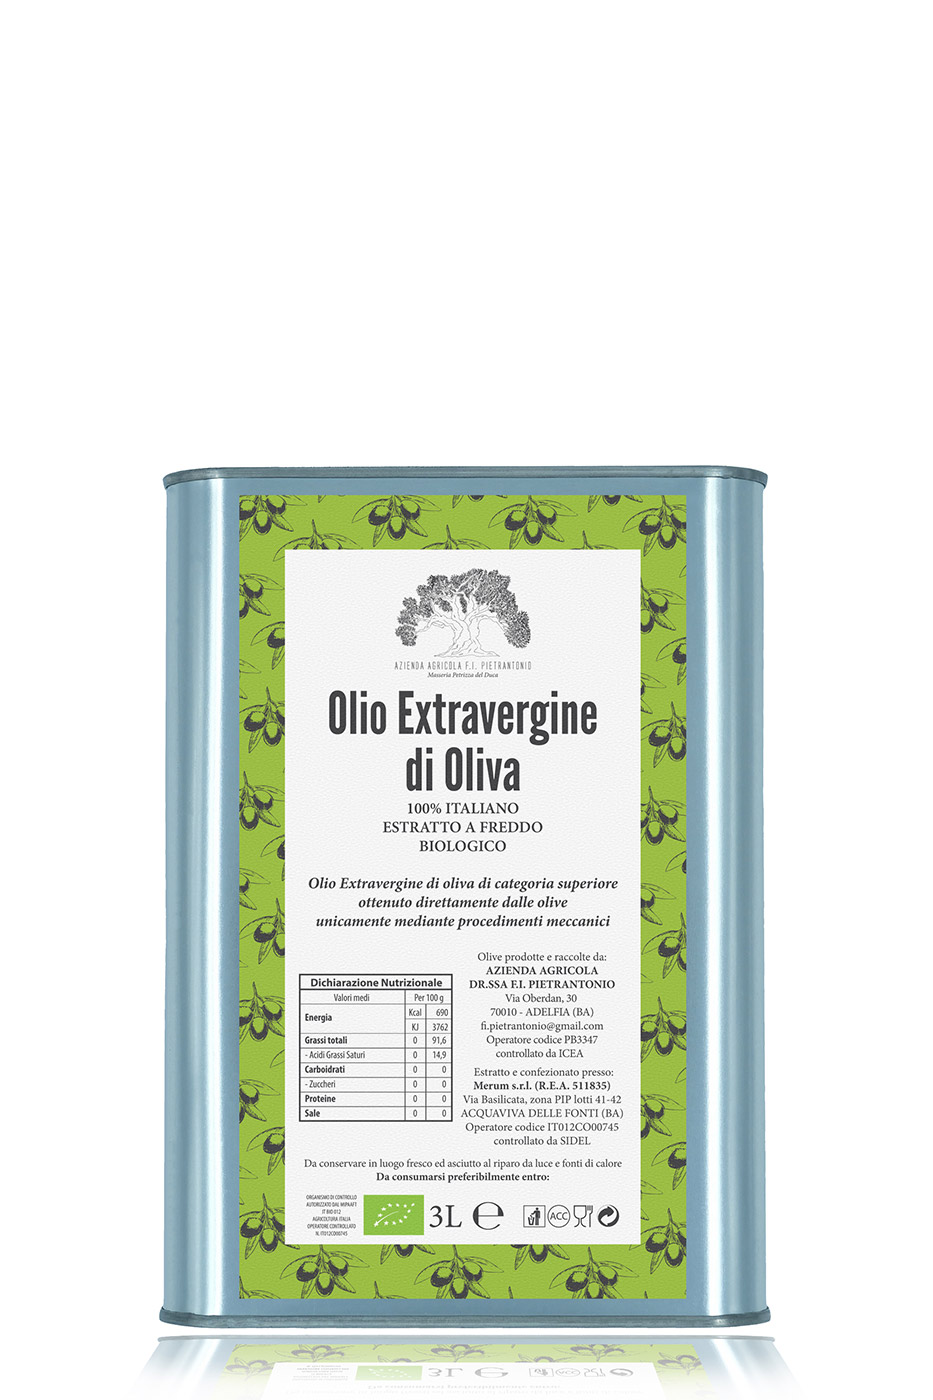 Lattina da 3 litri di olio extravergine d’oliva 100% italiano BIOLOGICO – estratto a freddo